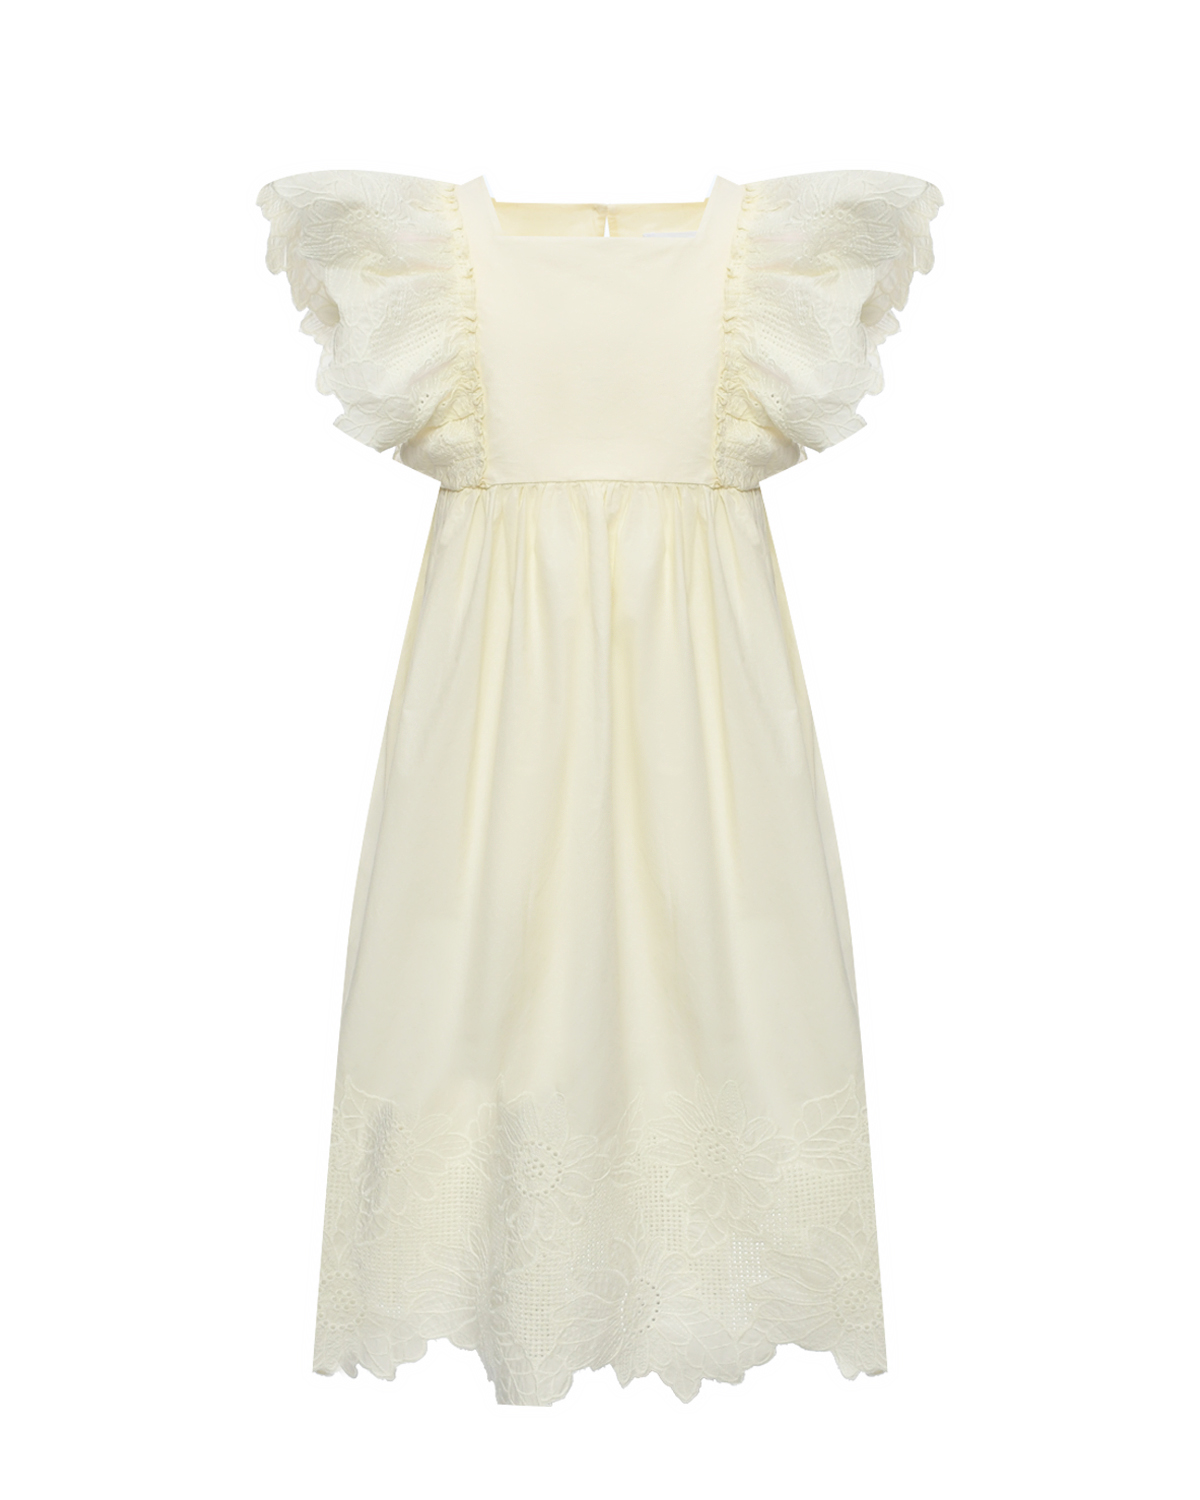 Платье А-силуэта, ажурные рукава-крылышки Cera Una Volta, размер 128, цвет кремовый - фото 1